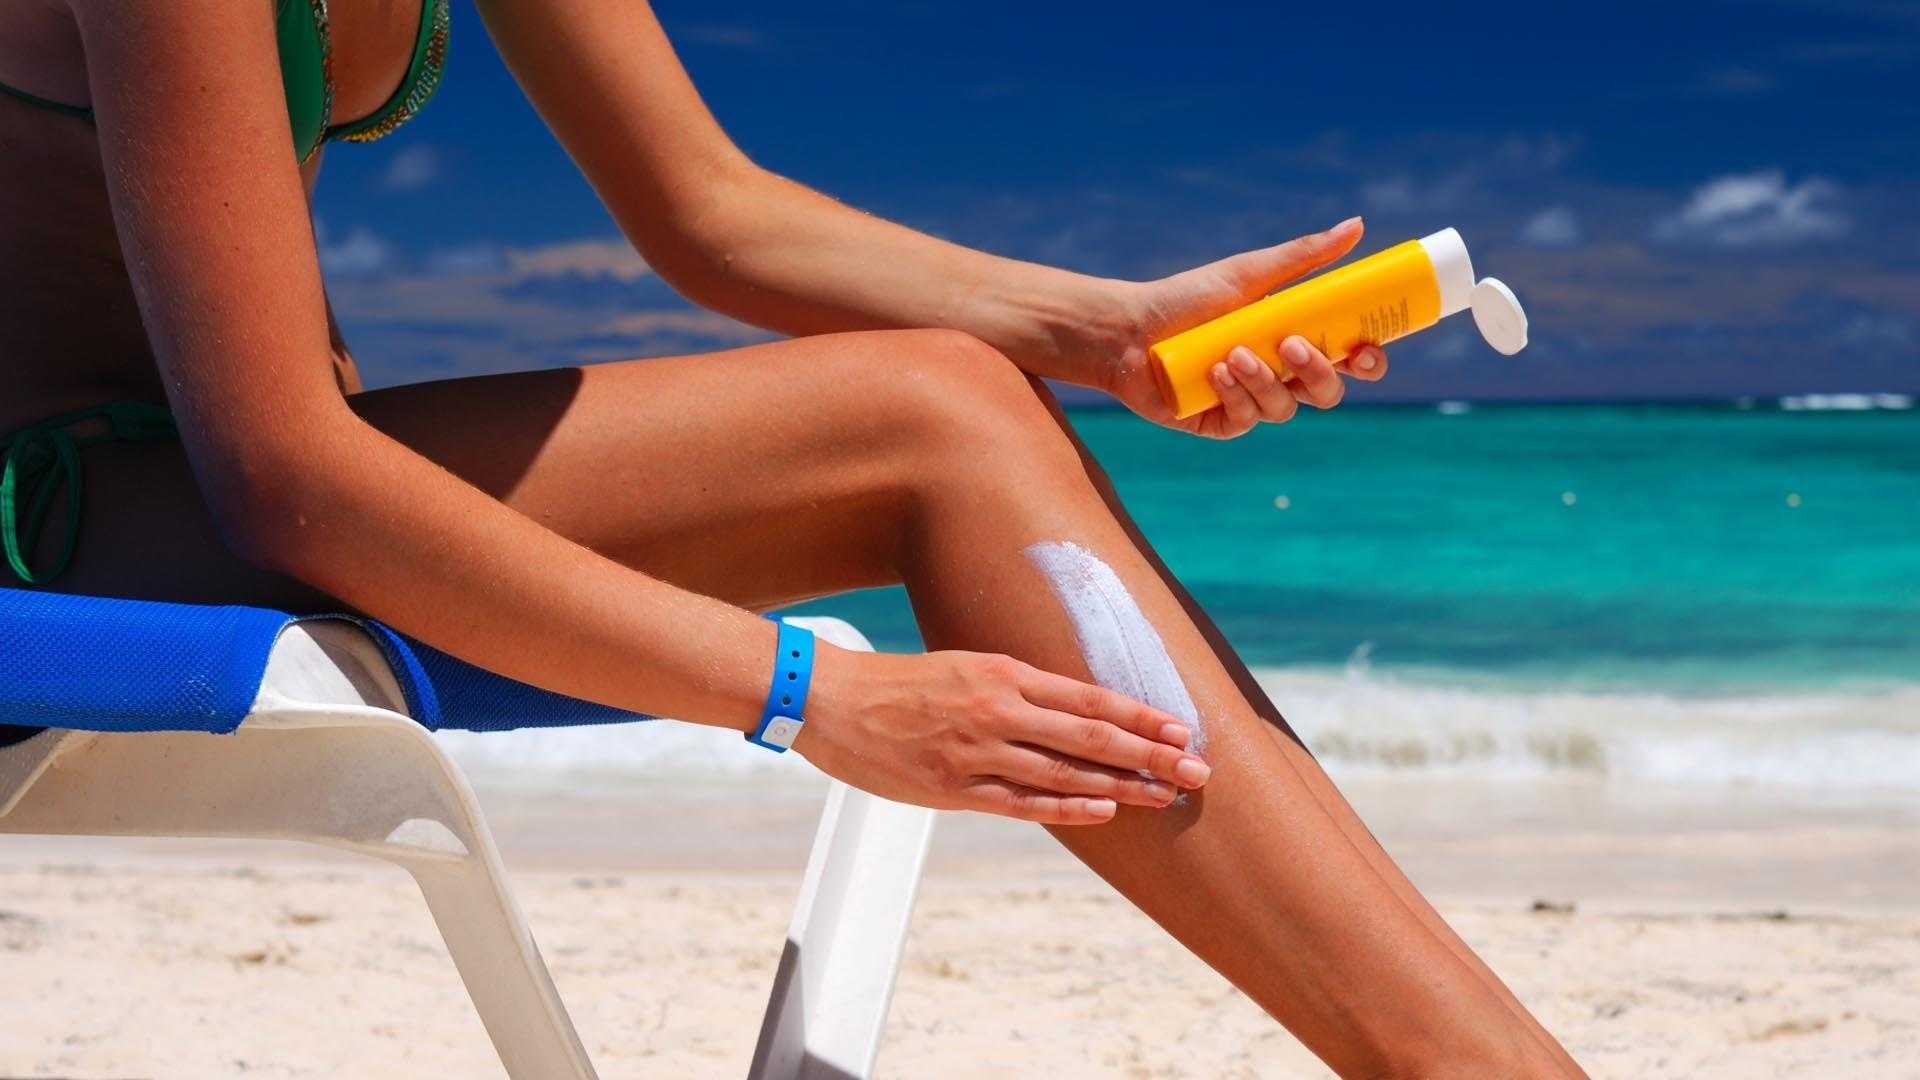 Загорает ли человек. Солнцезащитный лосьон Sunblock. Солнцезащитный крем Sunscreen. Защита кожи от ультрафиолетовых лучей. Крем от загара.